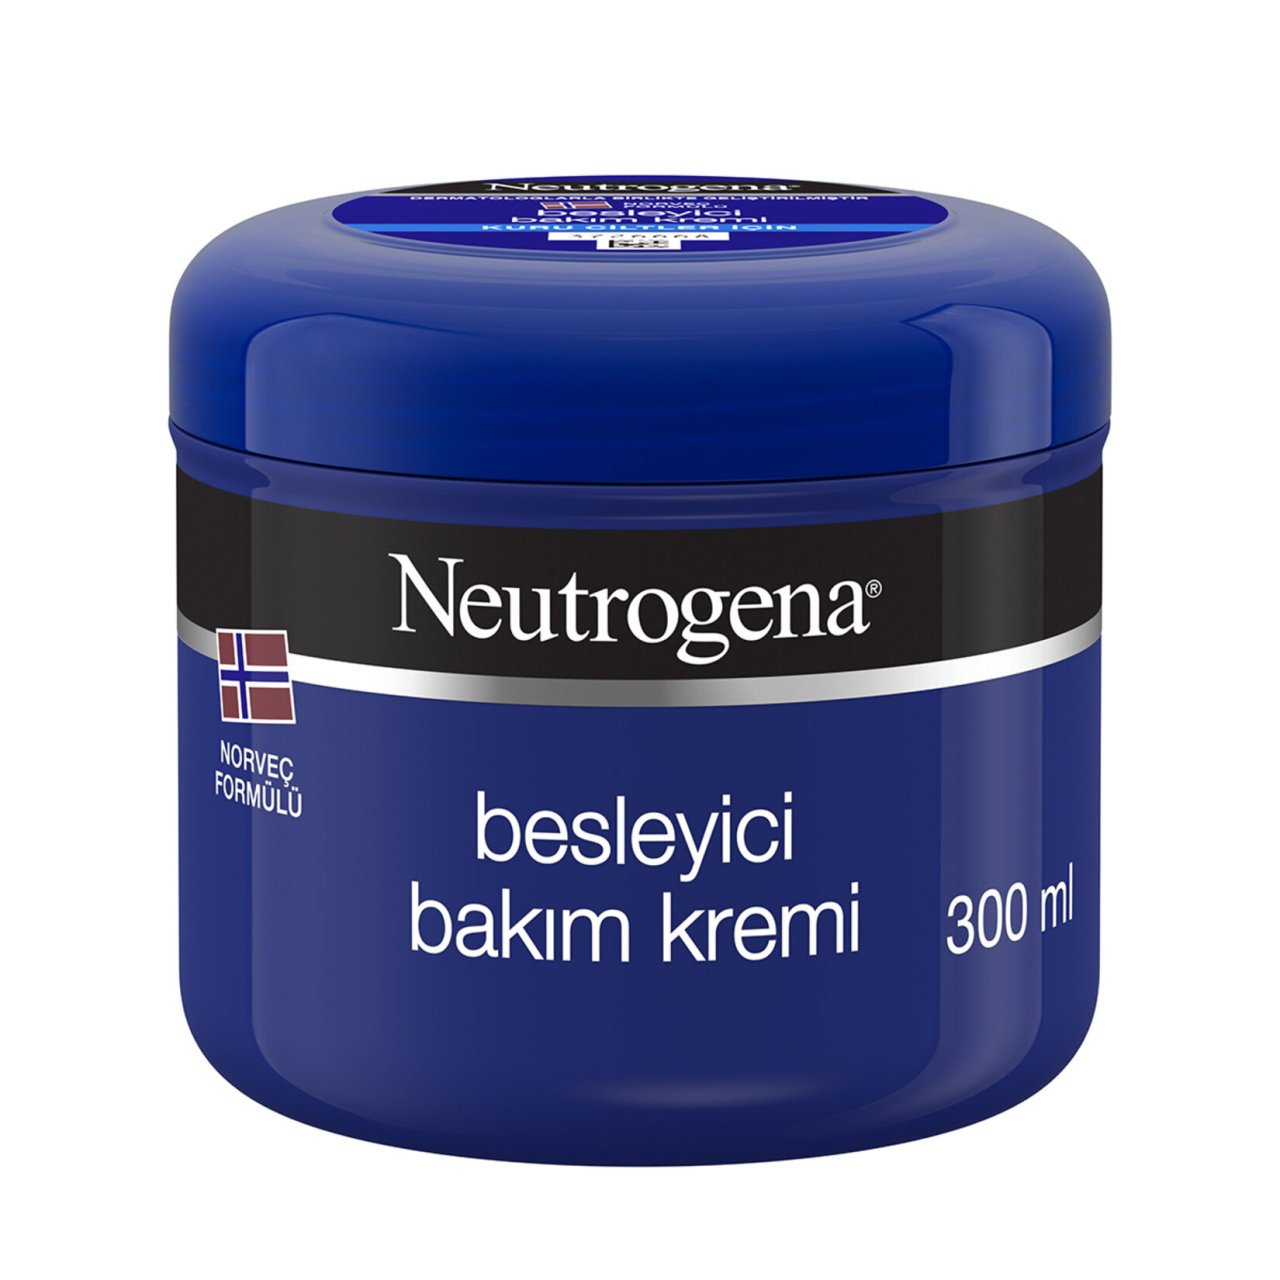 Neutrogena Besleyici Bakım Kremi 300 ml